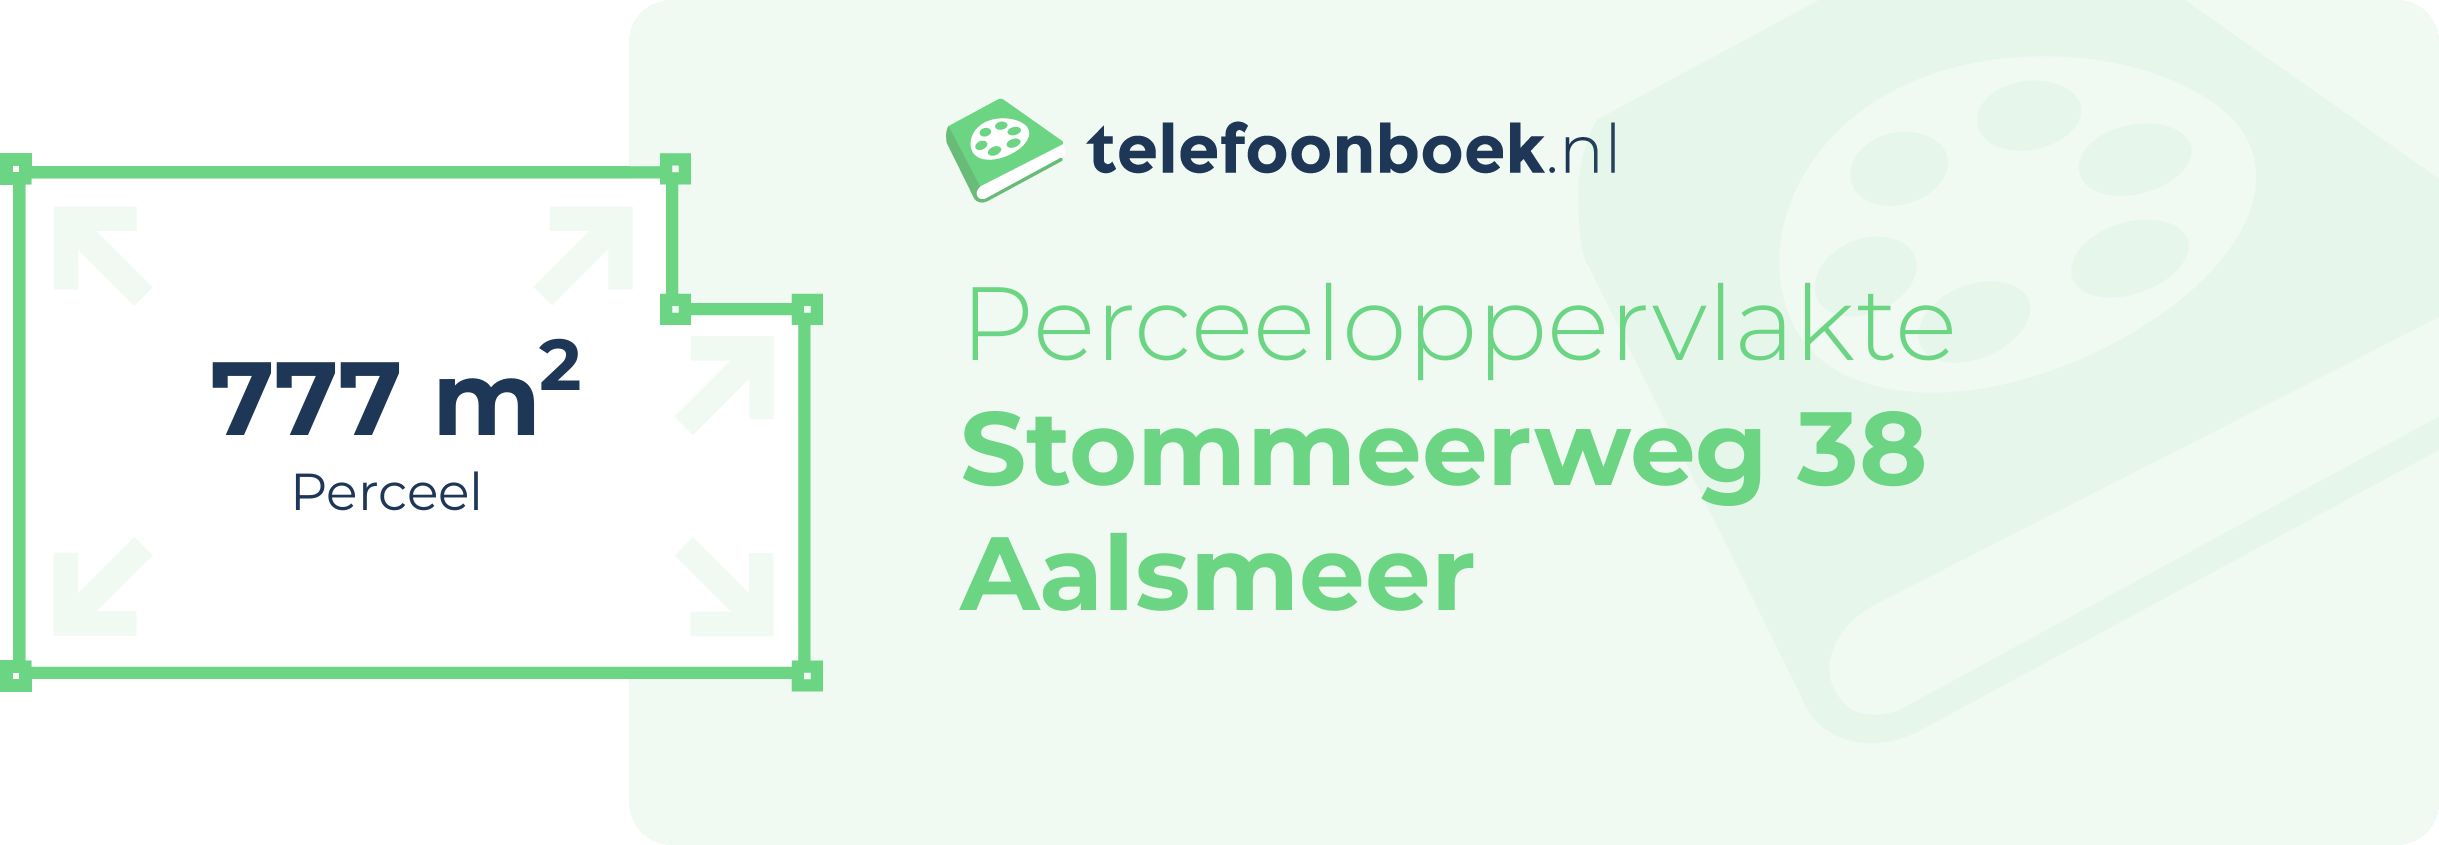 Perceeloppervlakte Stommeerweg 38 Aalsmeer